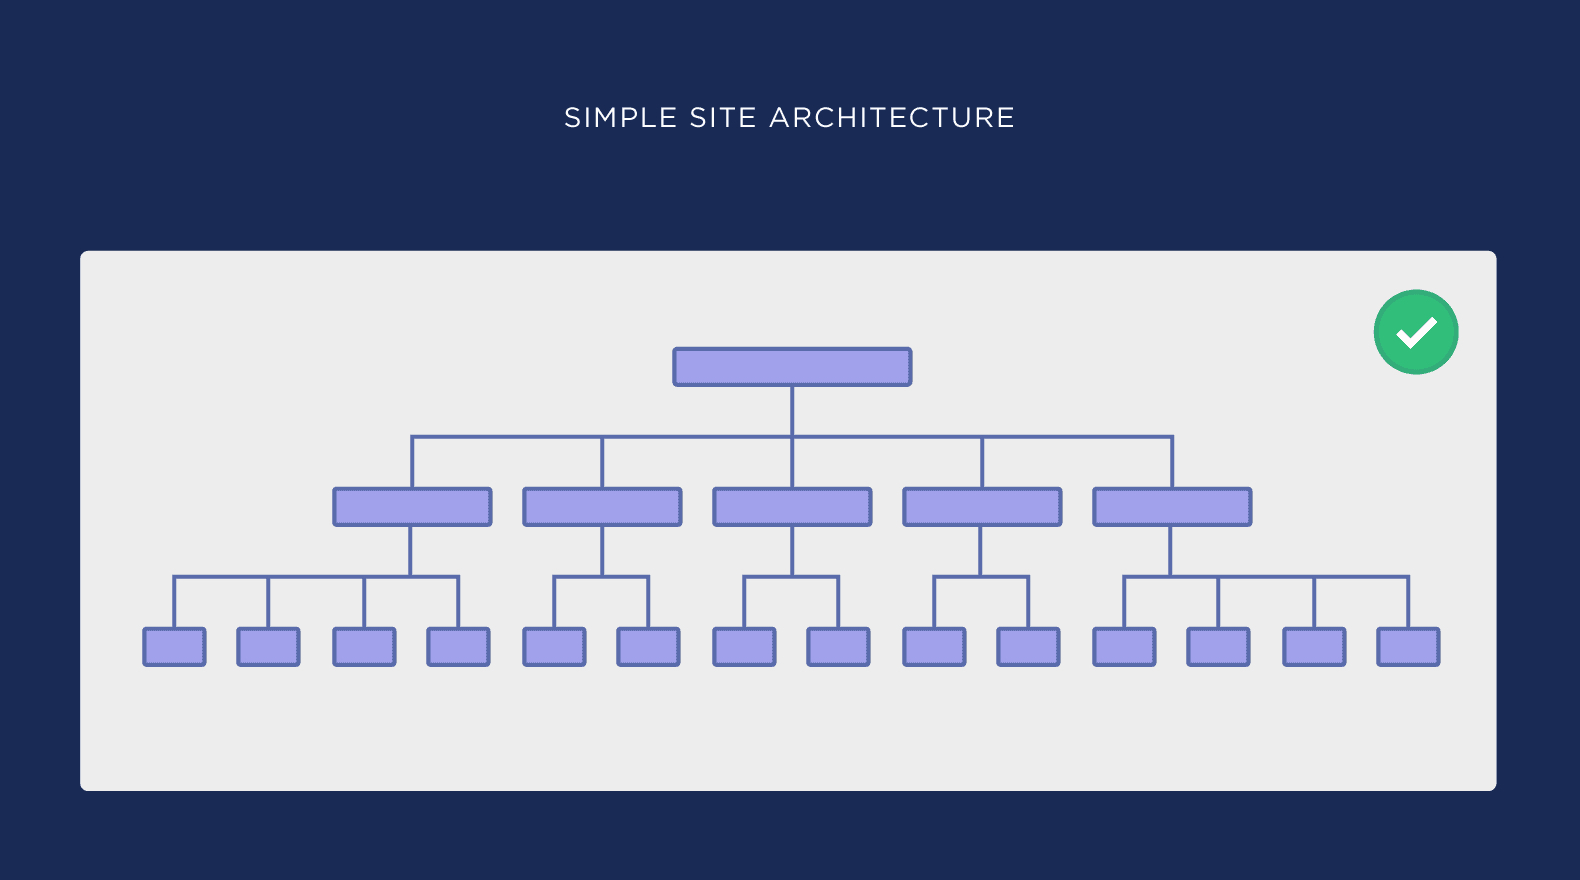 ภาพอธิบายการออกแบบ Site Structure ที่เรียบง่าย